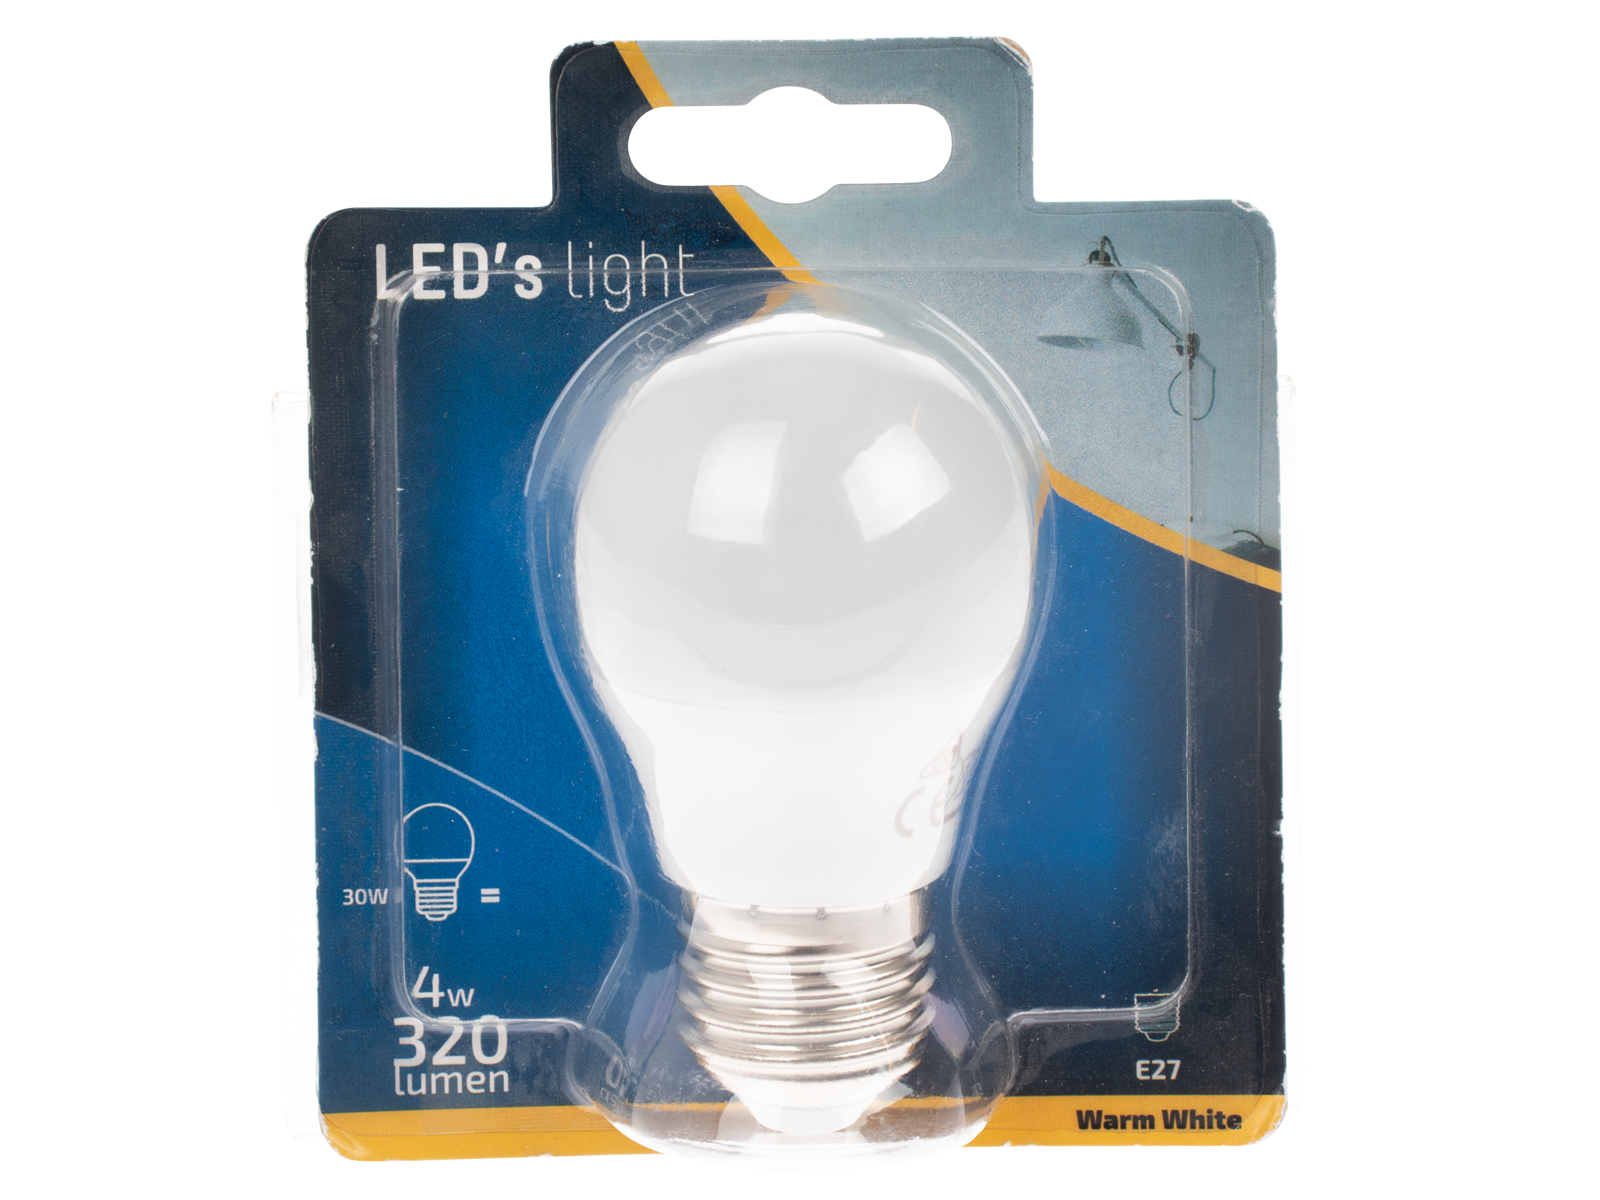 kapperszaak het formulier Geheugen LED lamp E27 320 lumen kopen? - Wibra Nederland - Dat doe je goed.